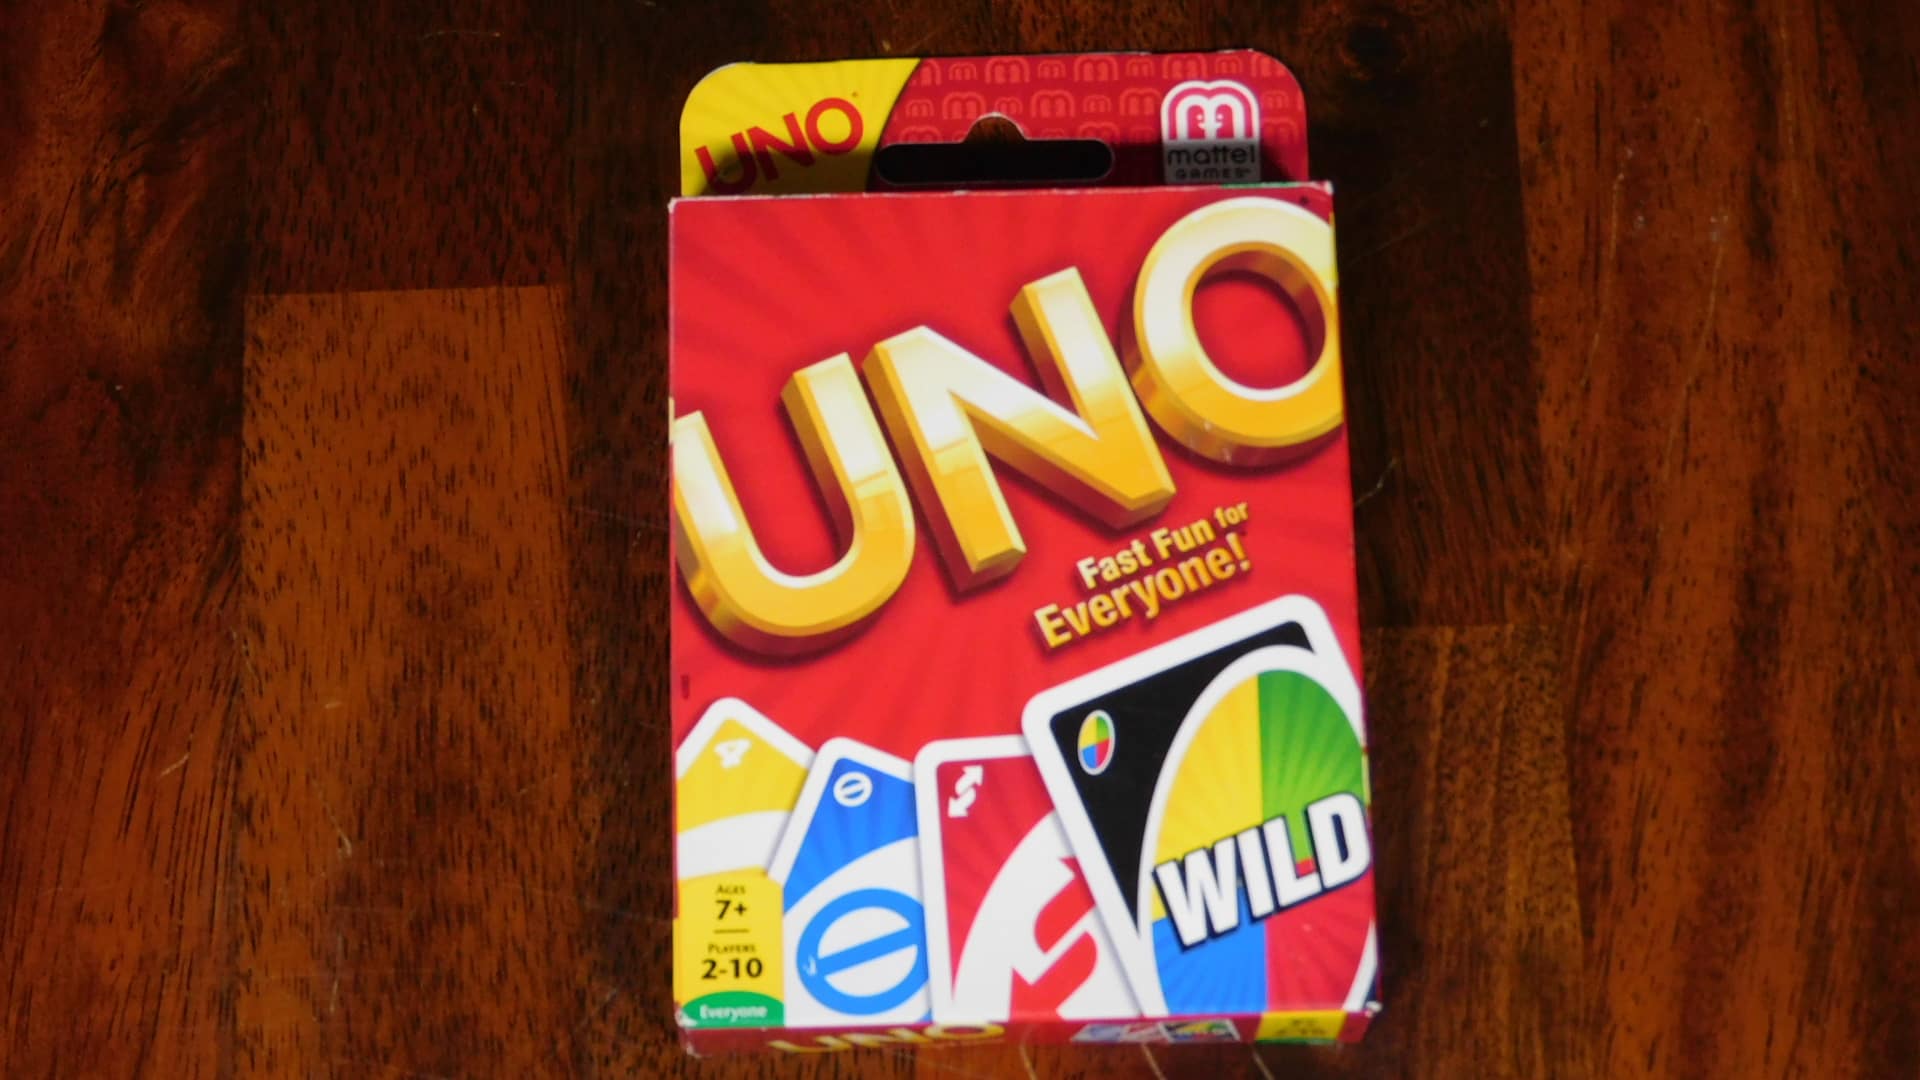 A closeup of the Uno card box cover.